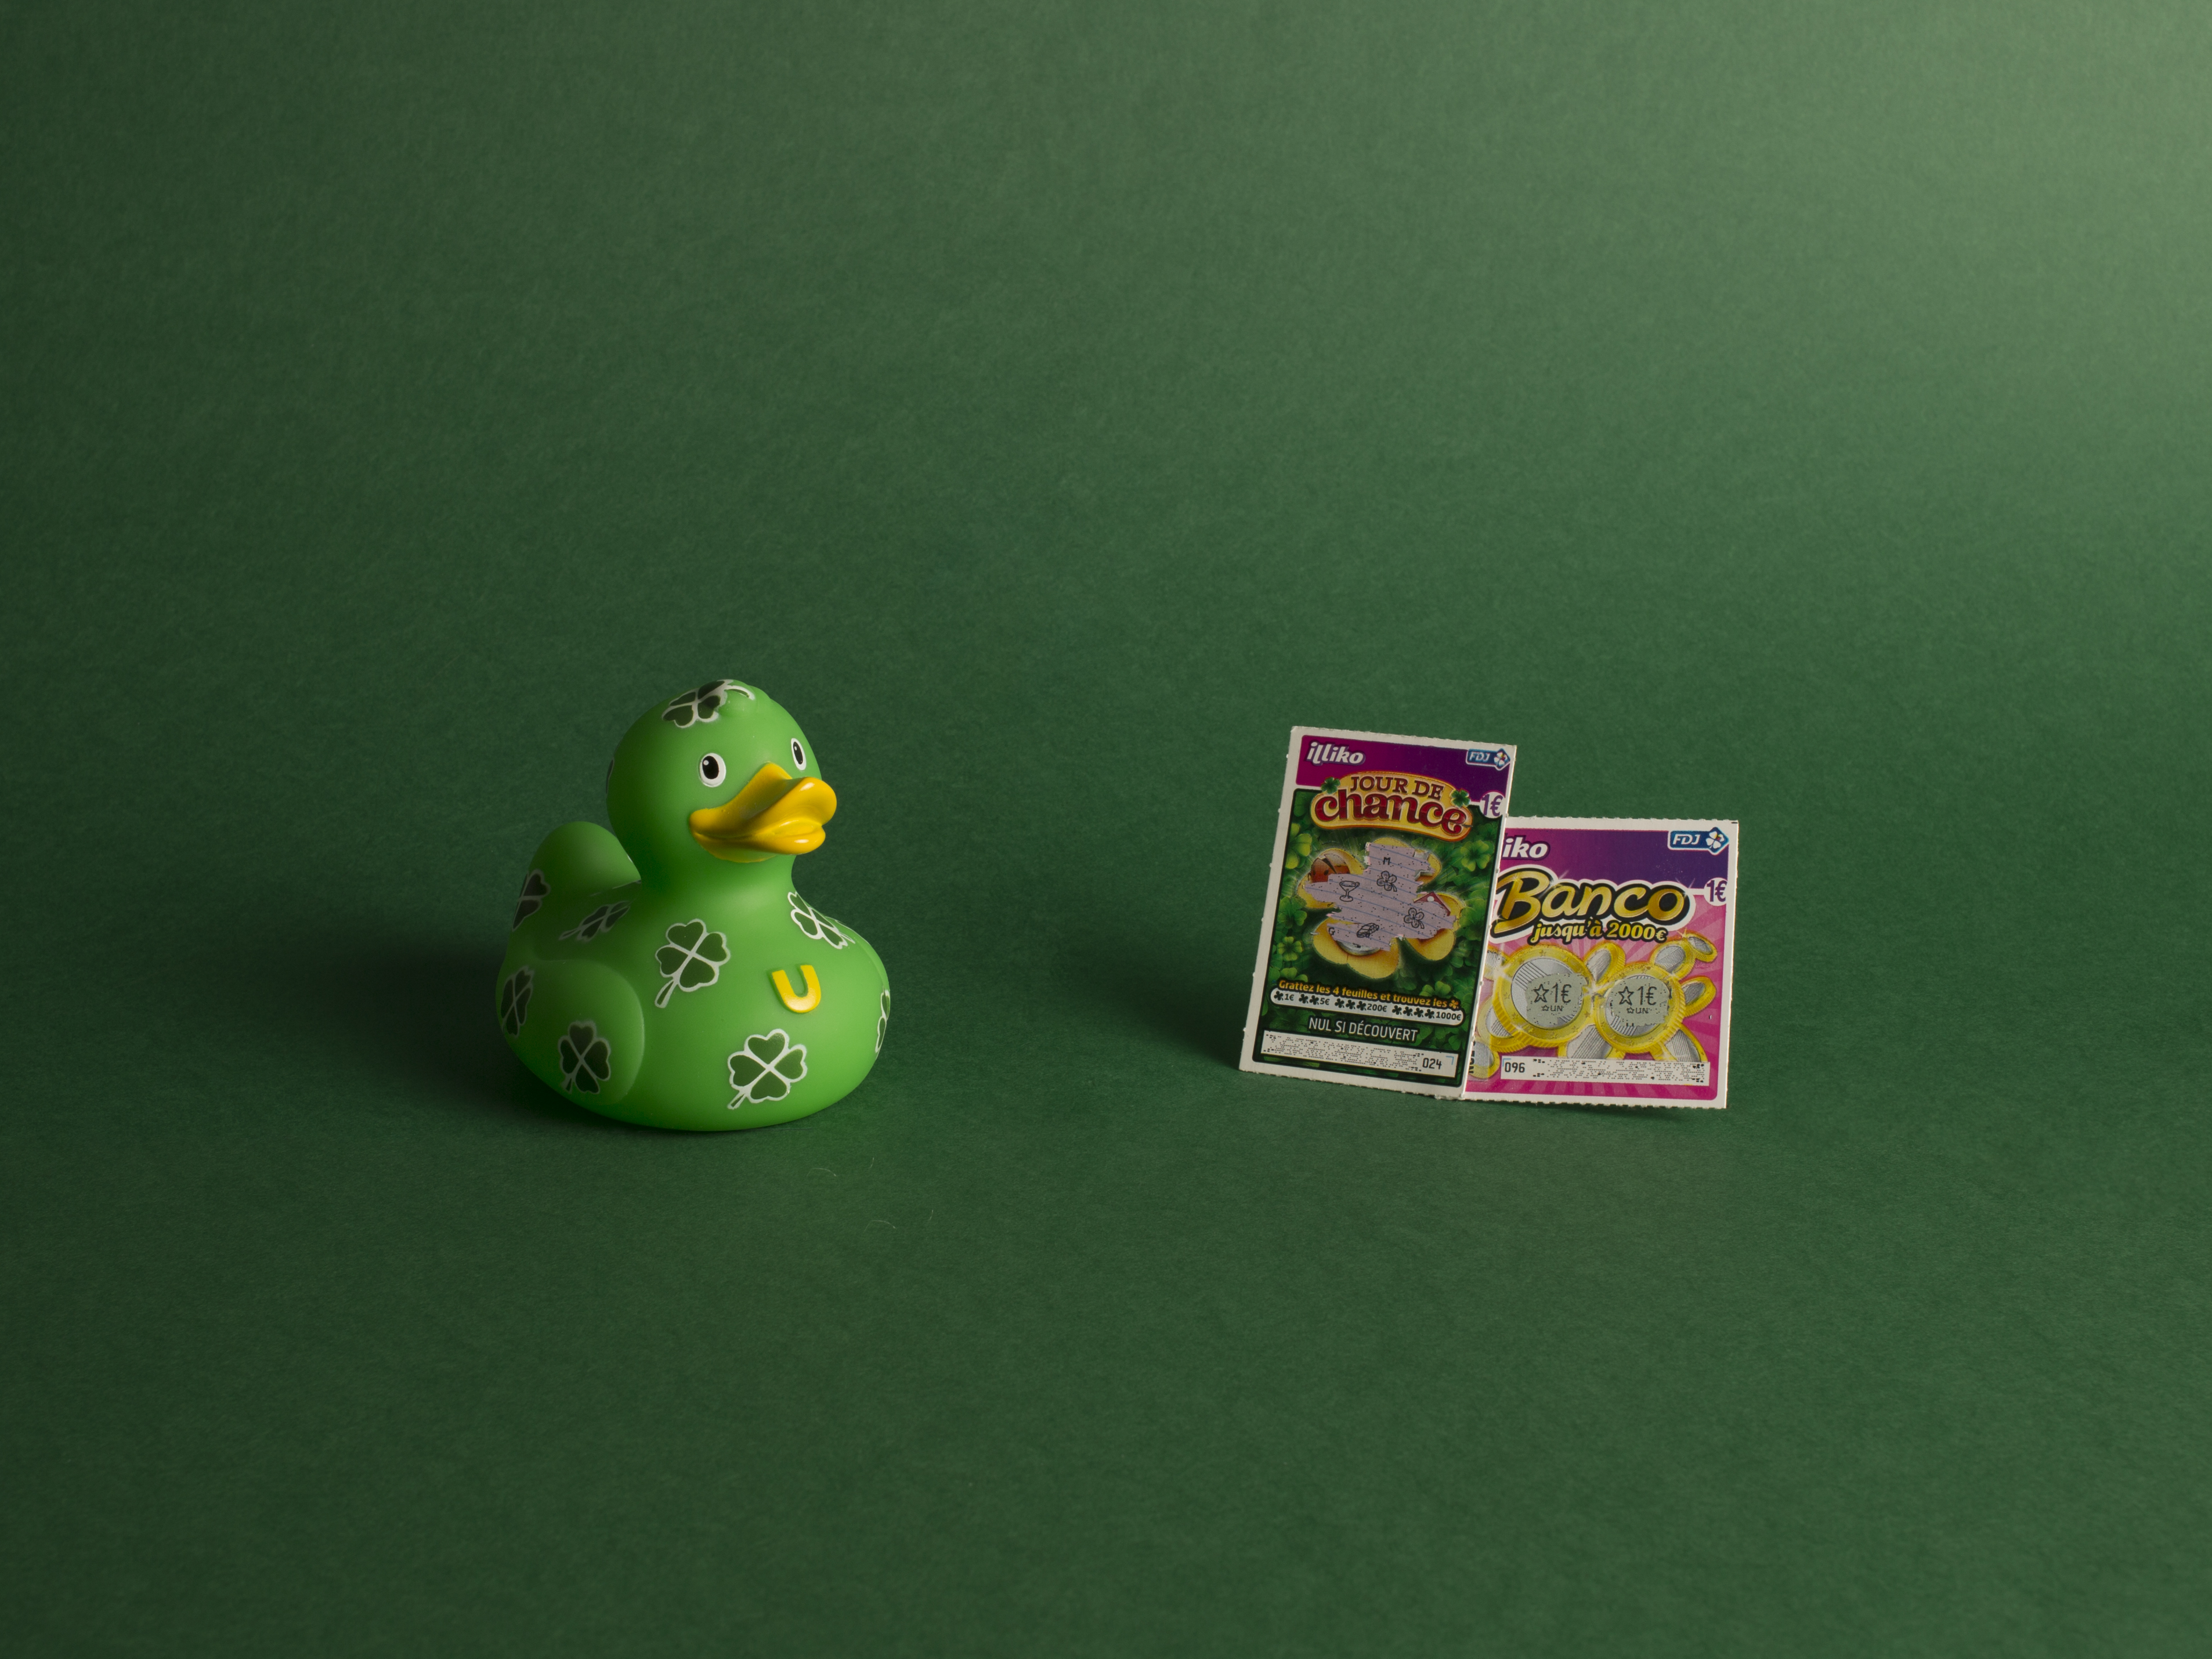 photographie d'un canard en plastique vert à trèfles avec des jeux à gratter